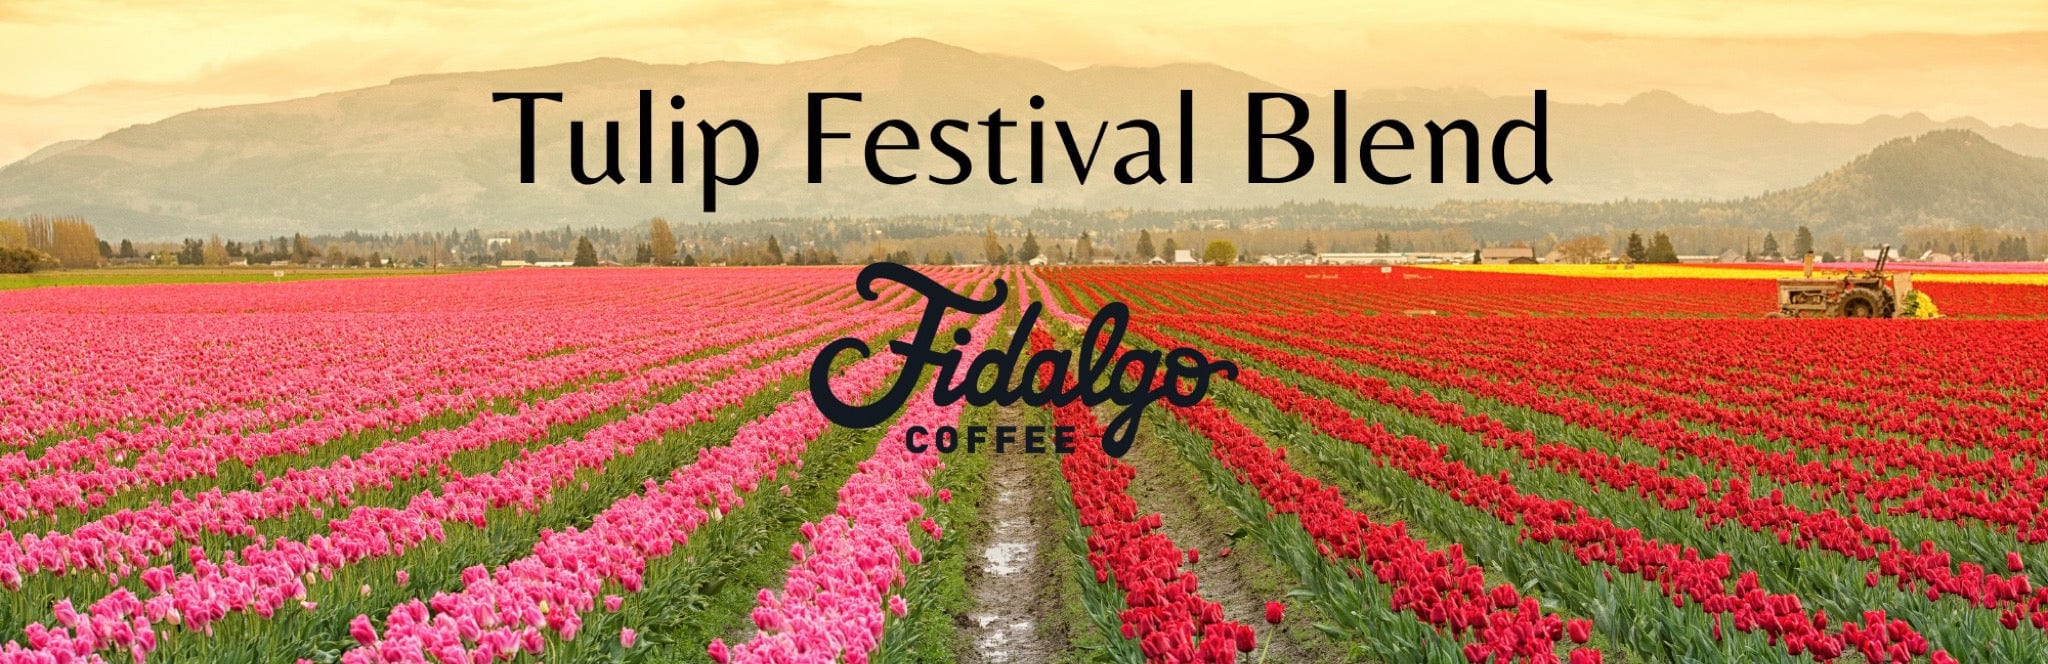 Tulip Festival Blend Banner